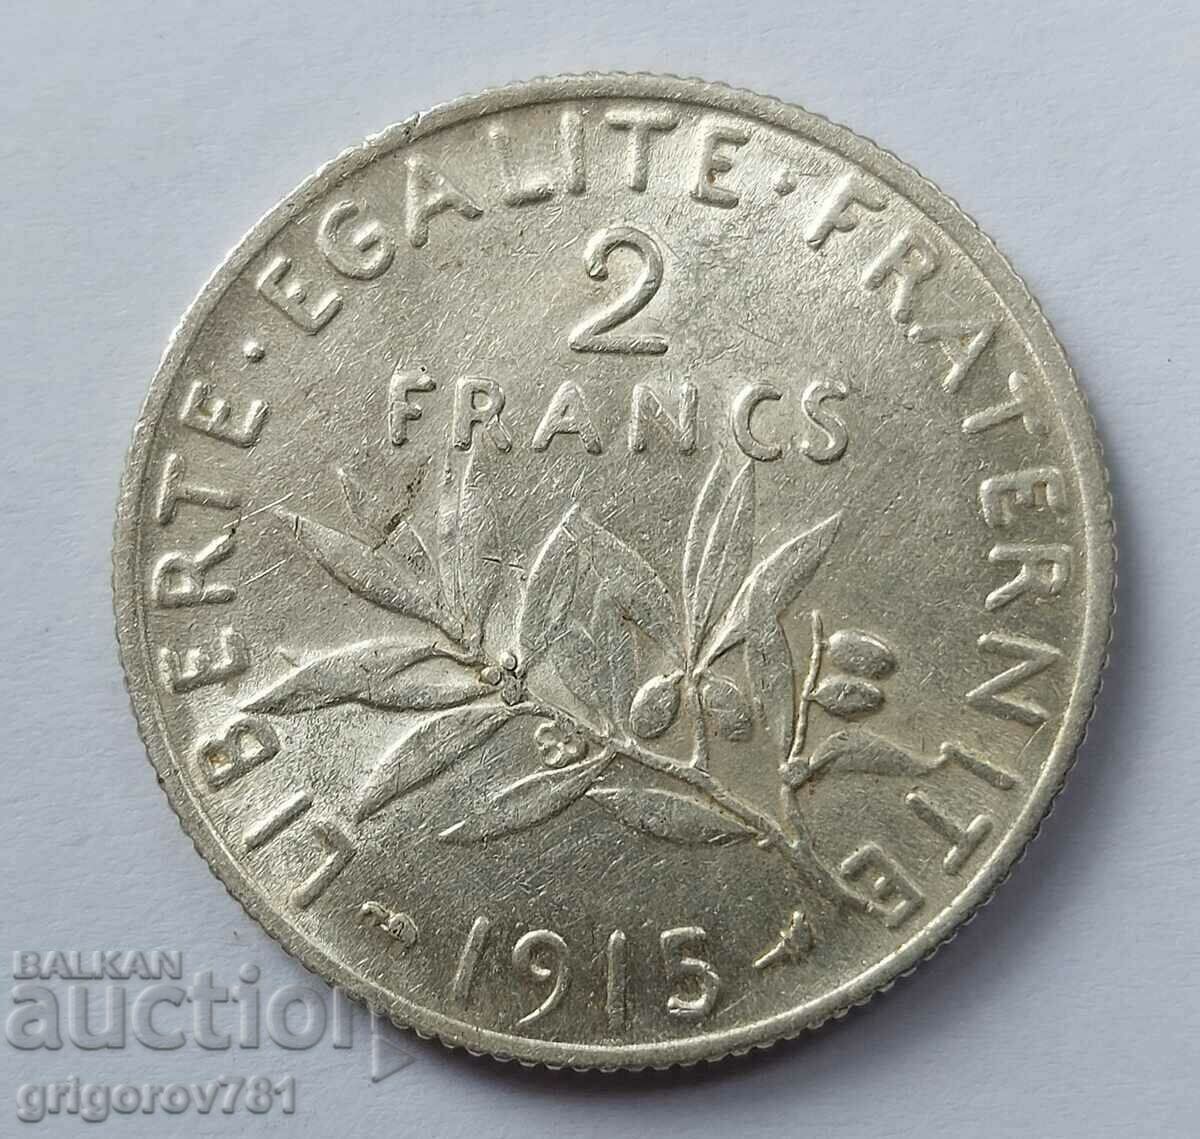 Ασημένιο 2 φράγκα Γαλλία 1915 - ασημένιο νόμισμα №5